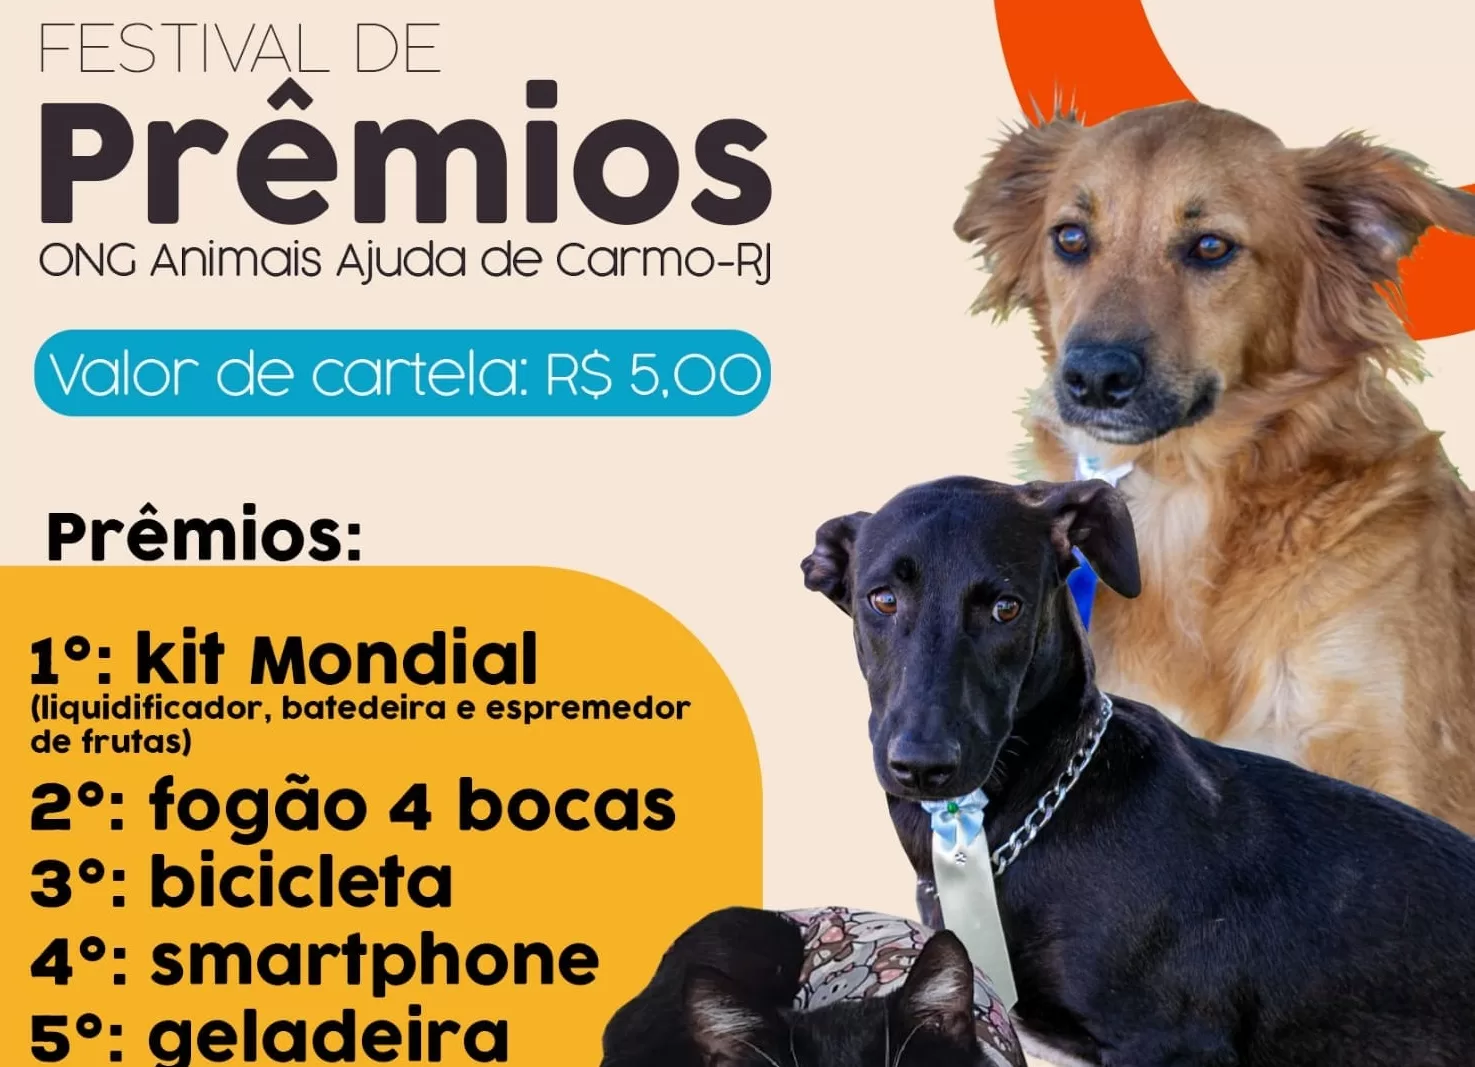 ONG ‘Animais Ajuda’, de Carmo, irá realizar Festival de Prêmios neste fim de semana